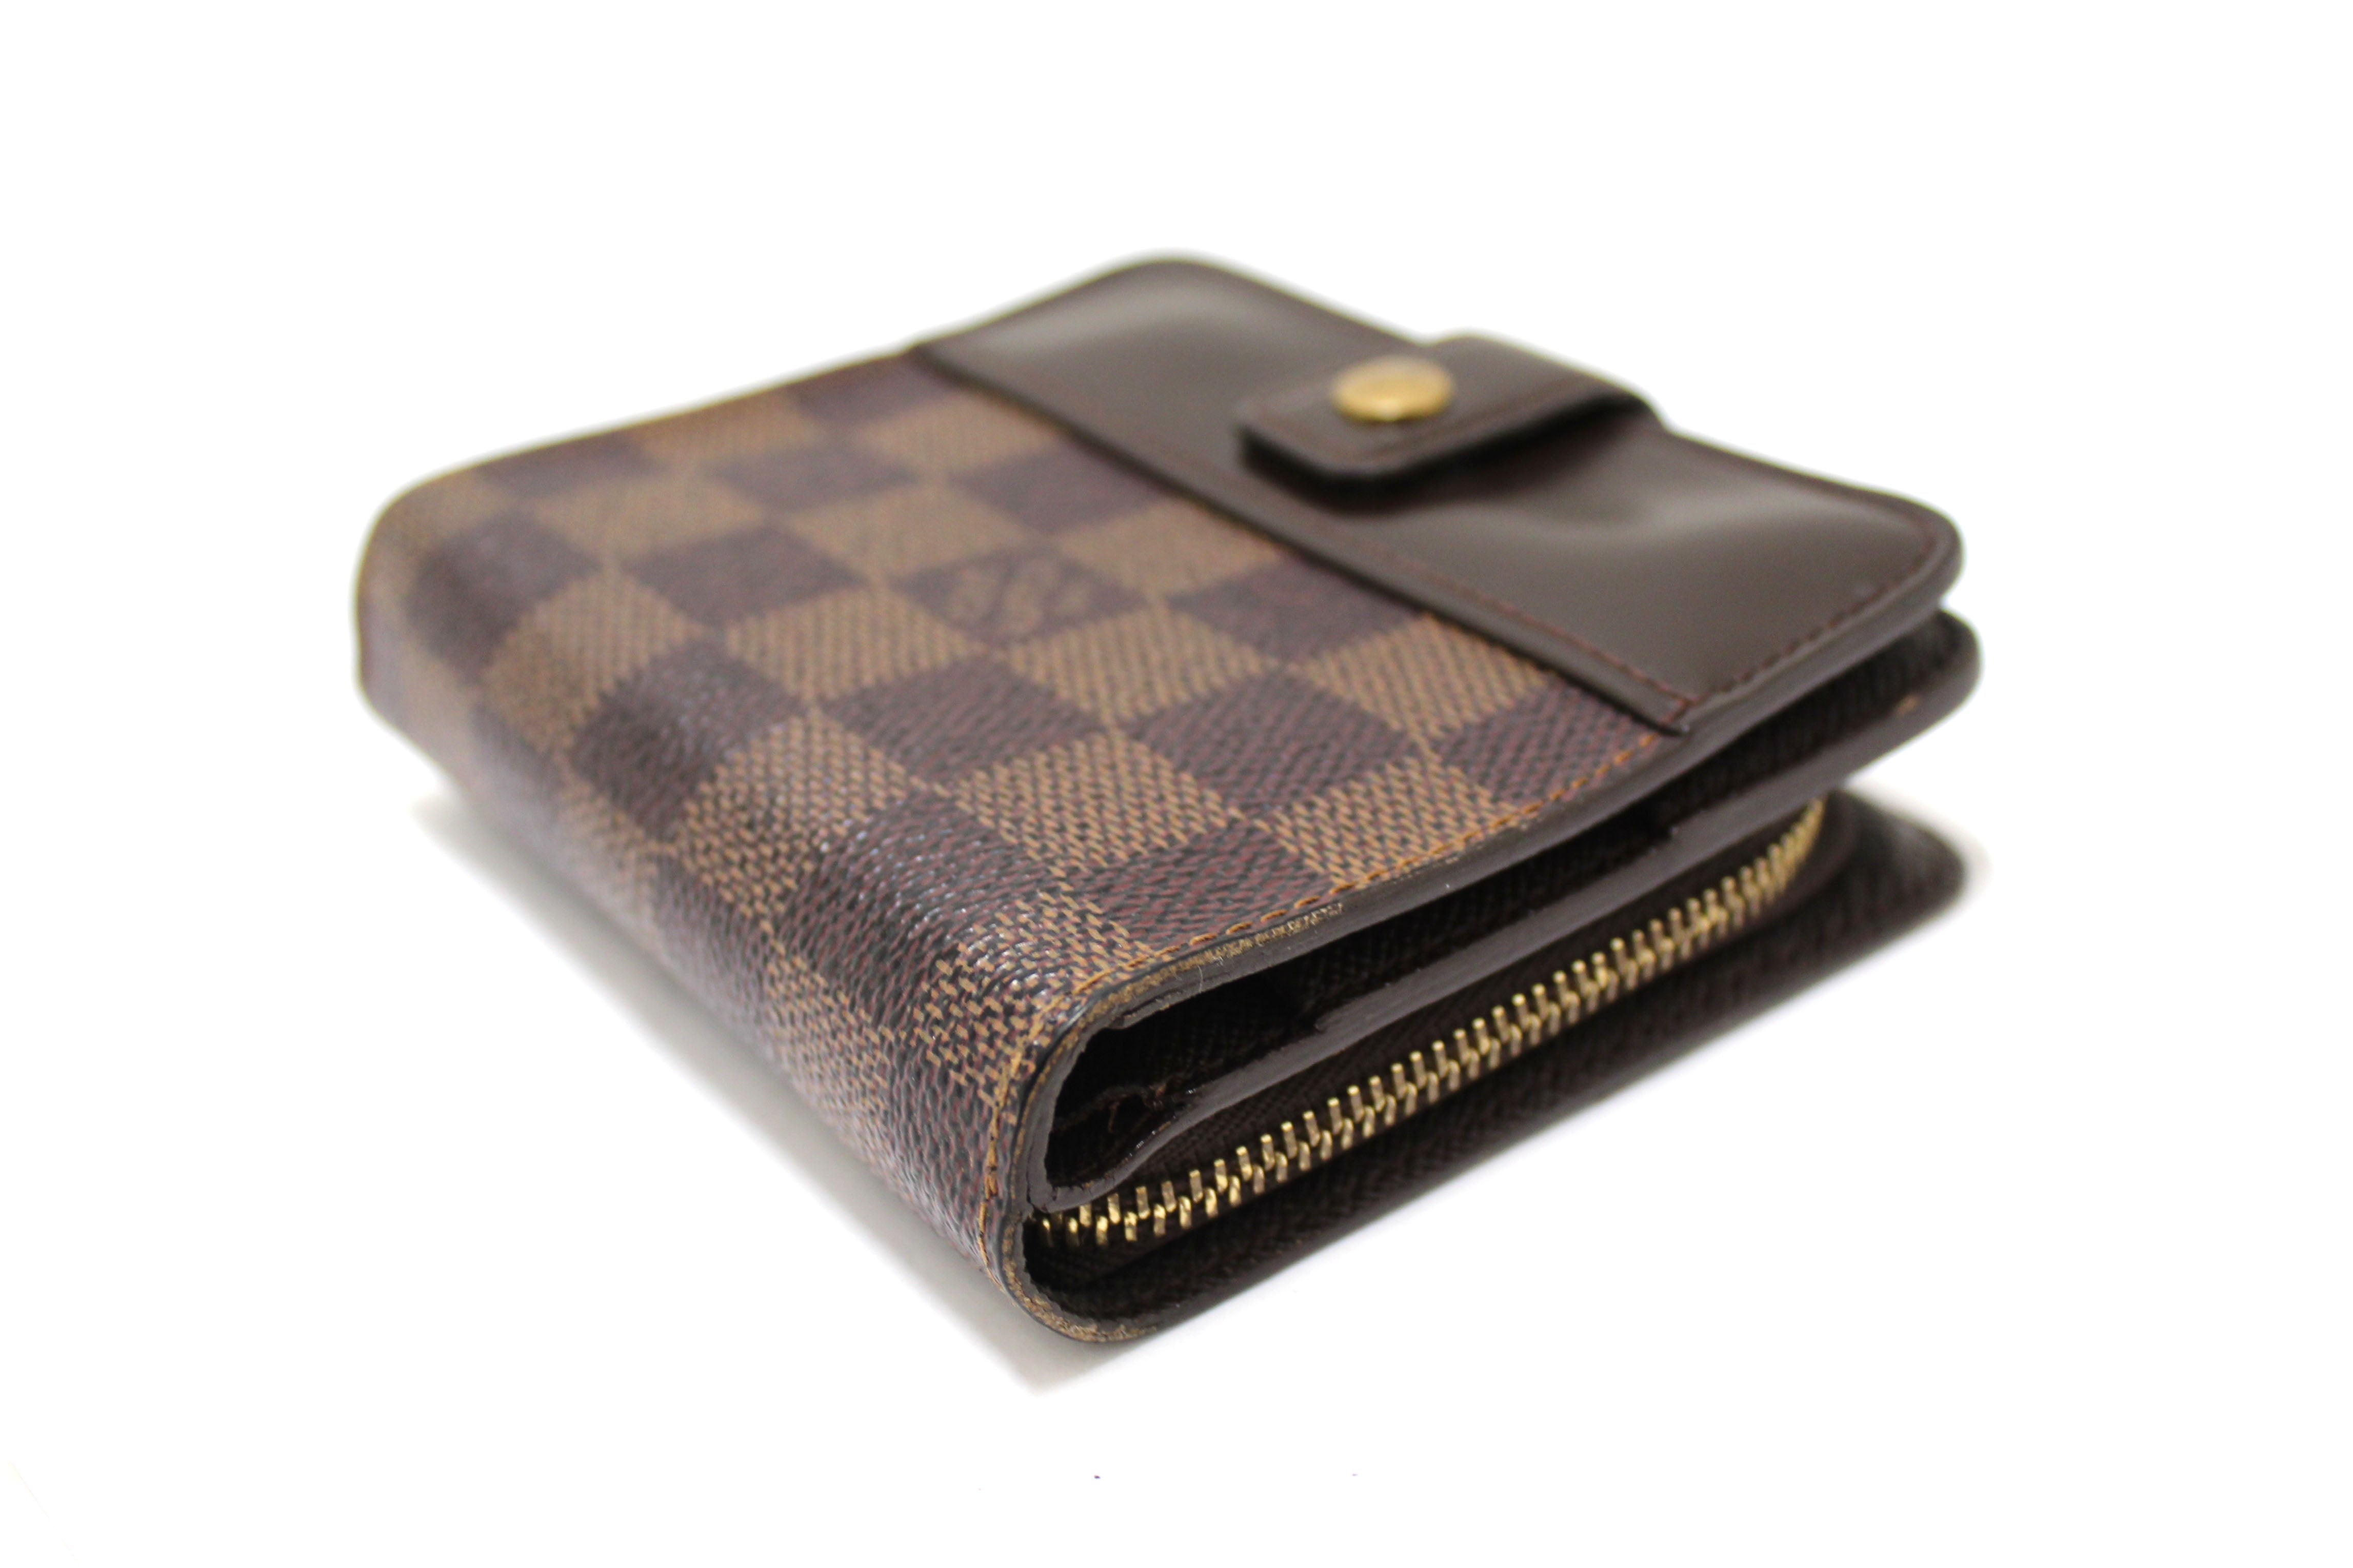 Authentic Louis Vuitton Damier Ebene Compact Zippy Wallet